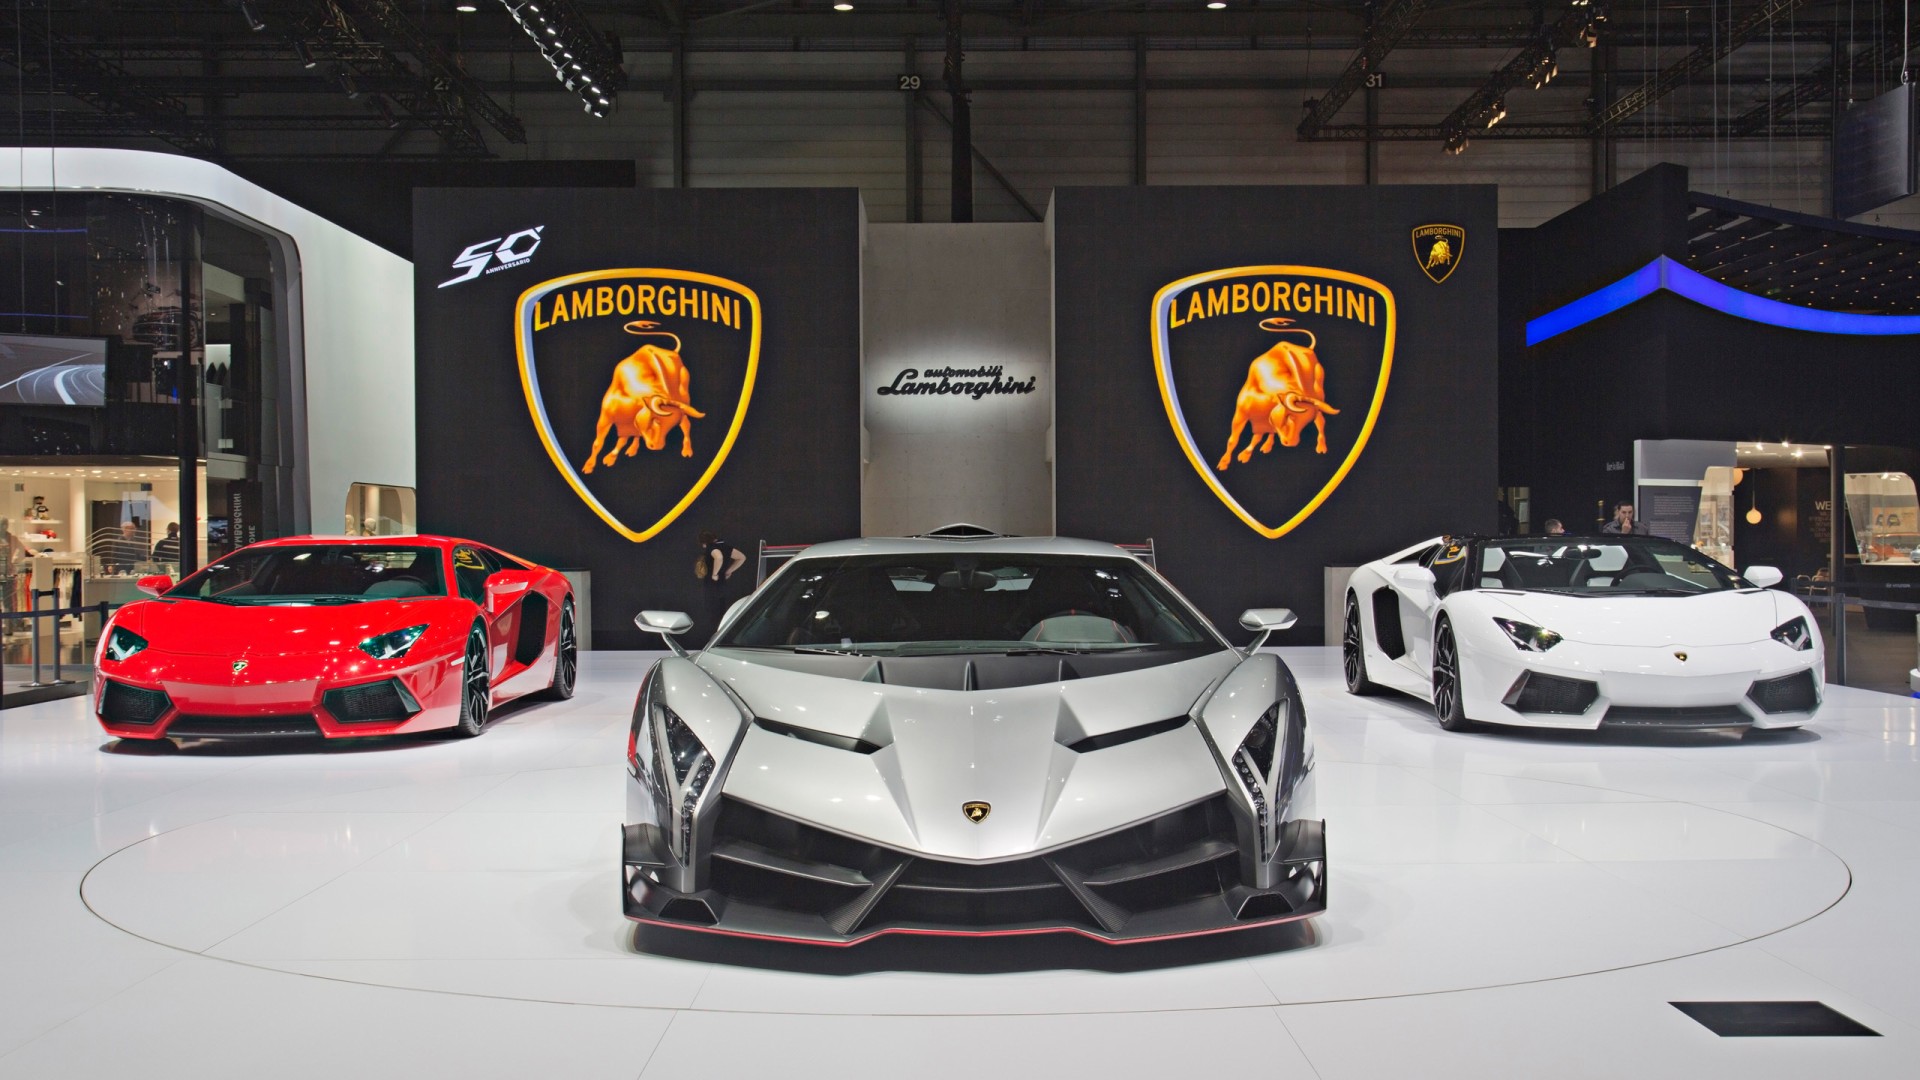 2013 Lamborghini Veneno Geneva Motor Show Wallpaper | HD ...